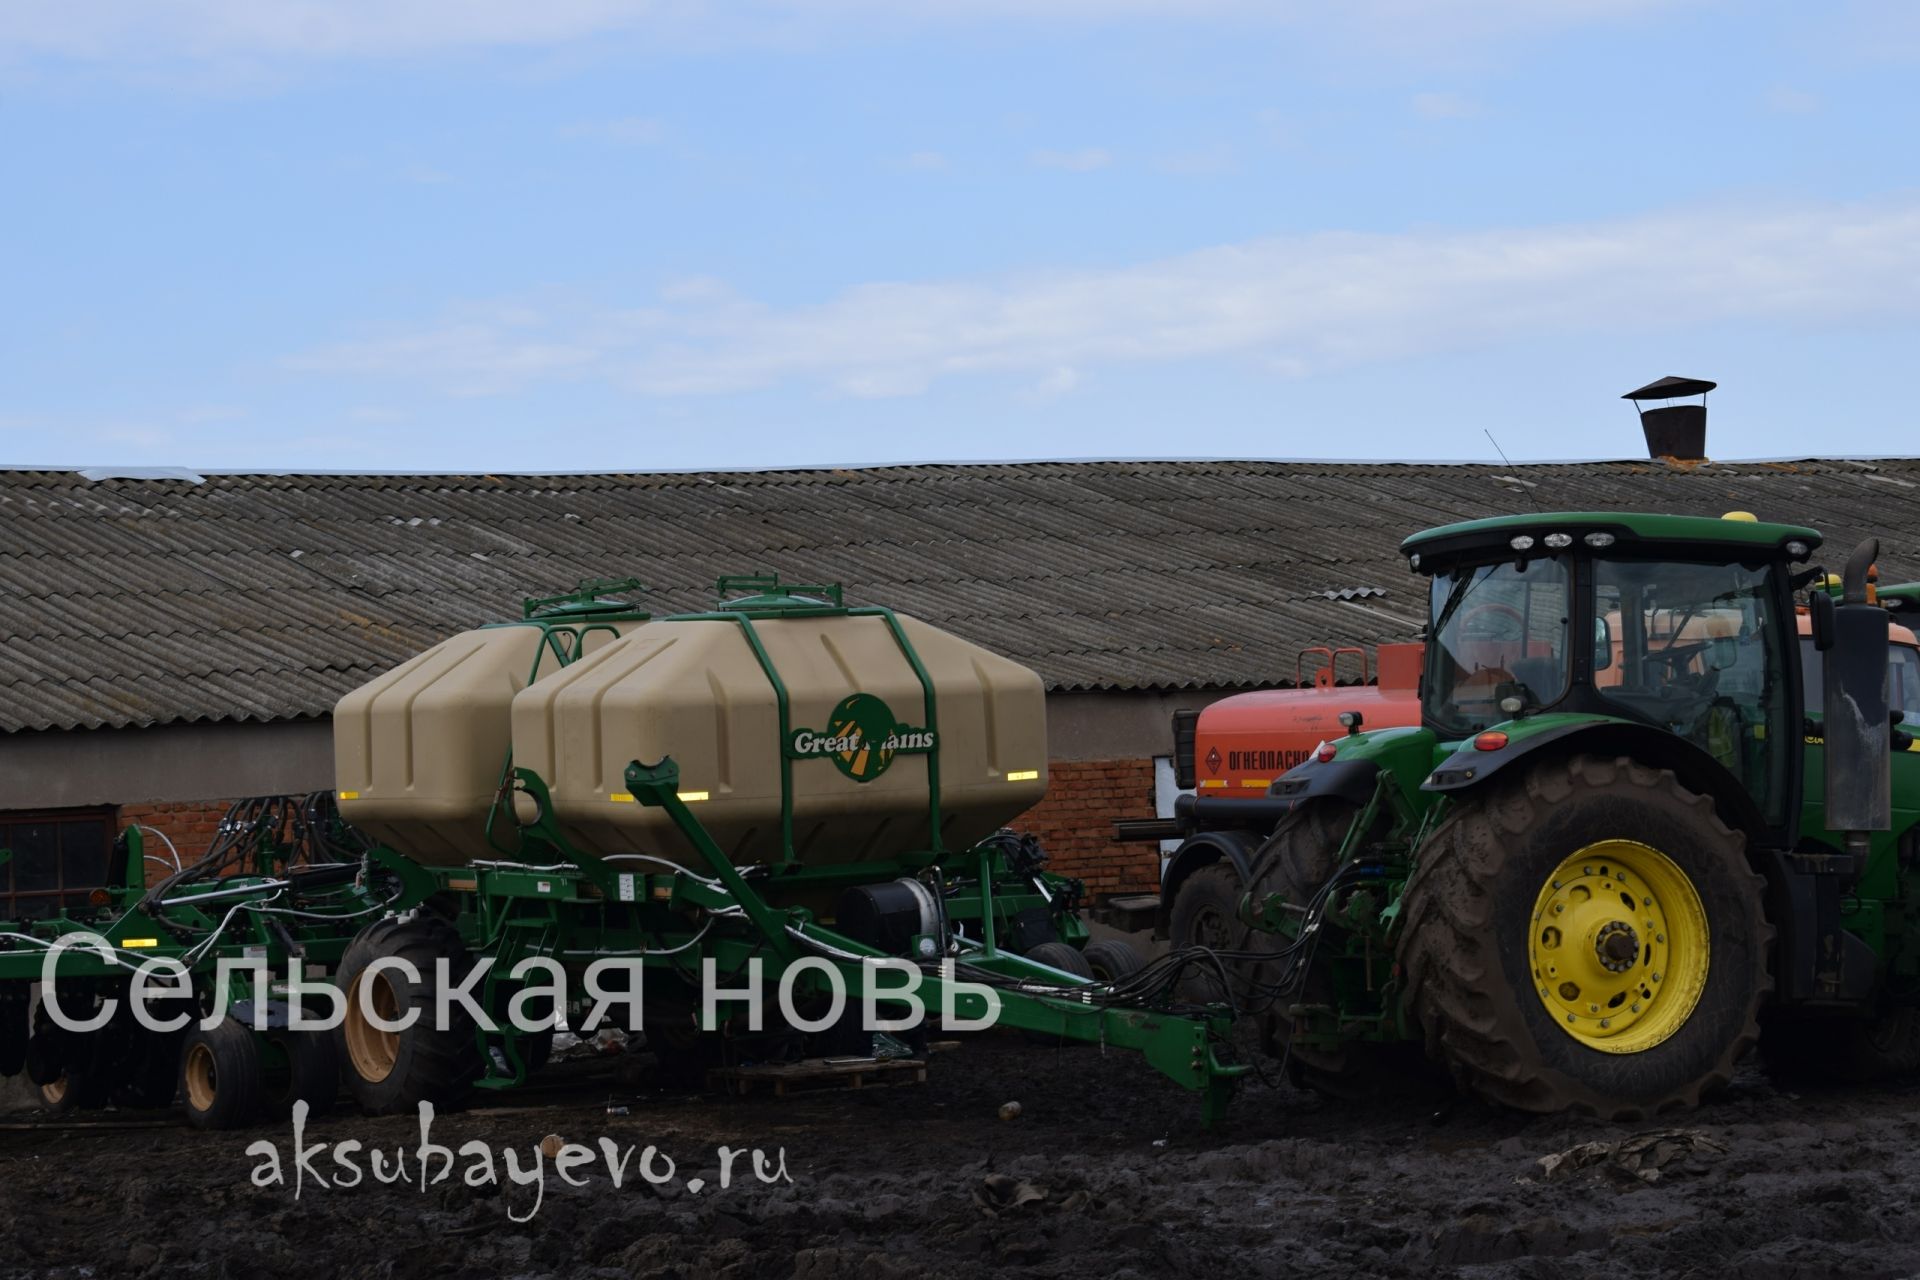 Аксубаевские земледельцы готовы к посевной